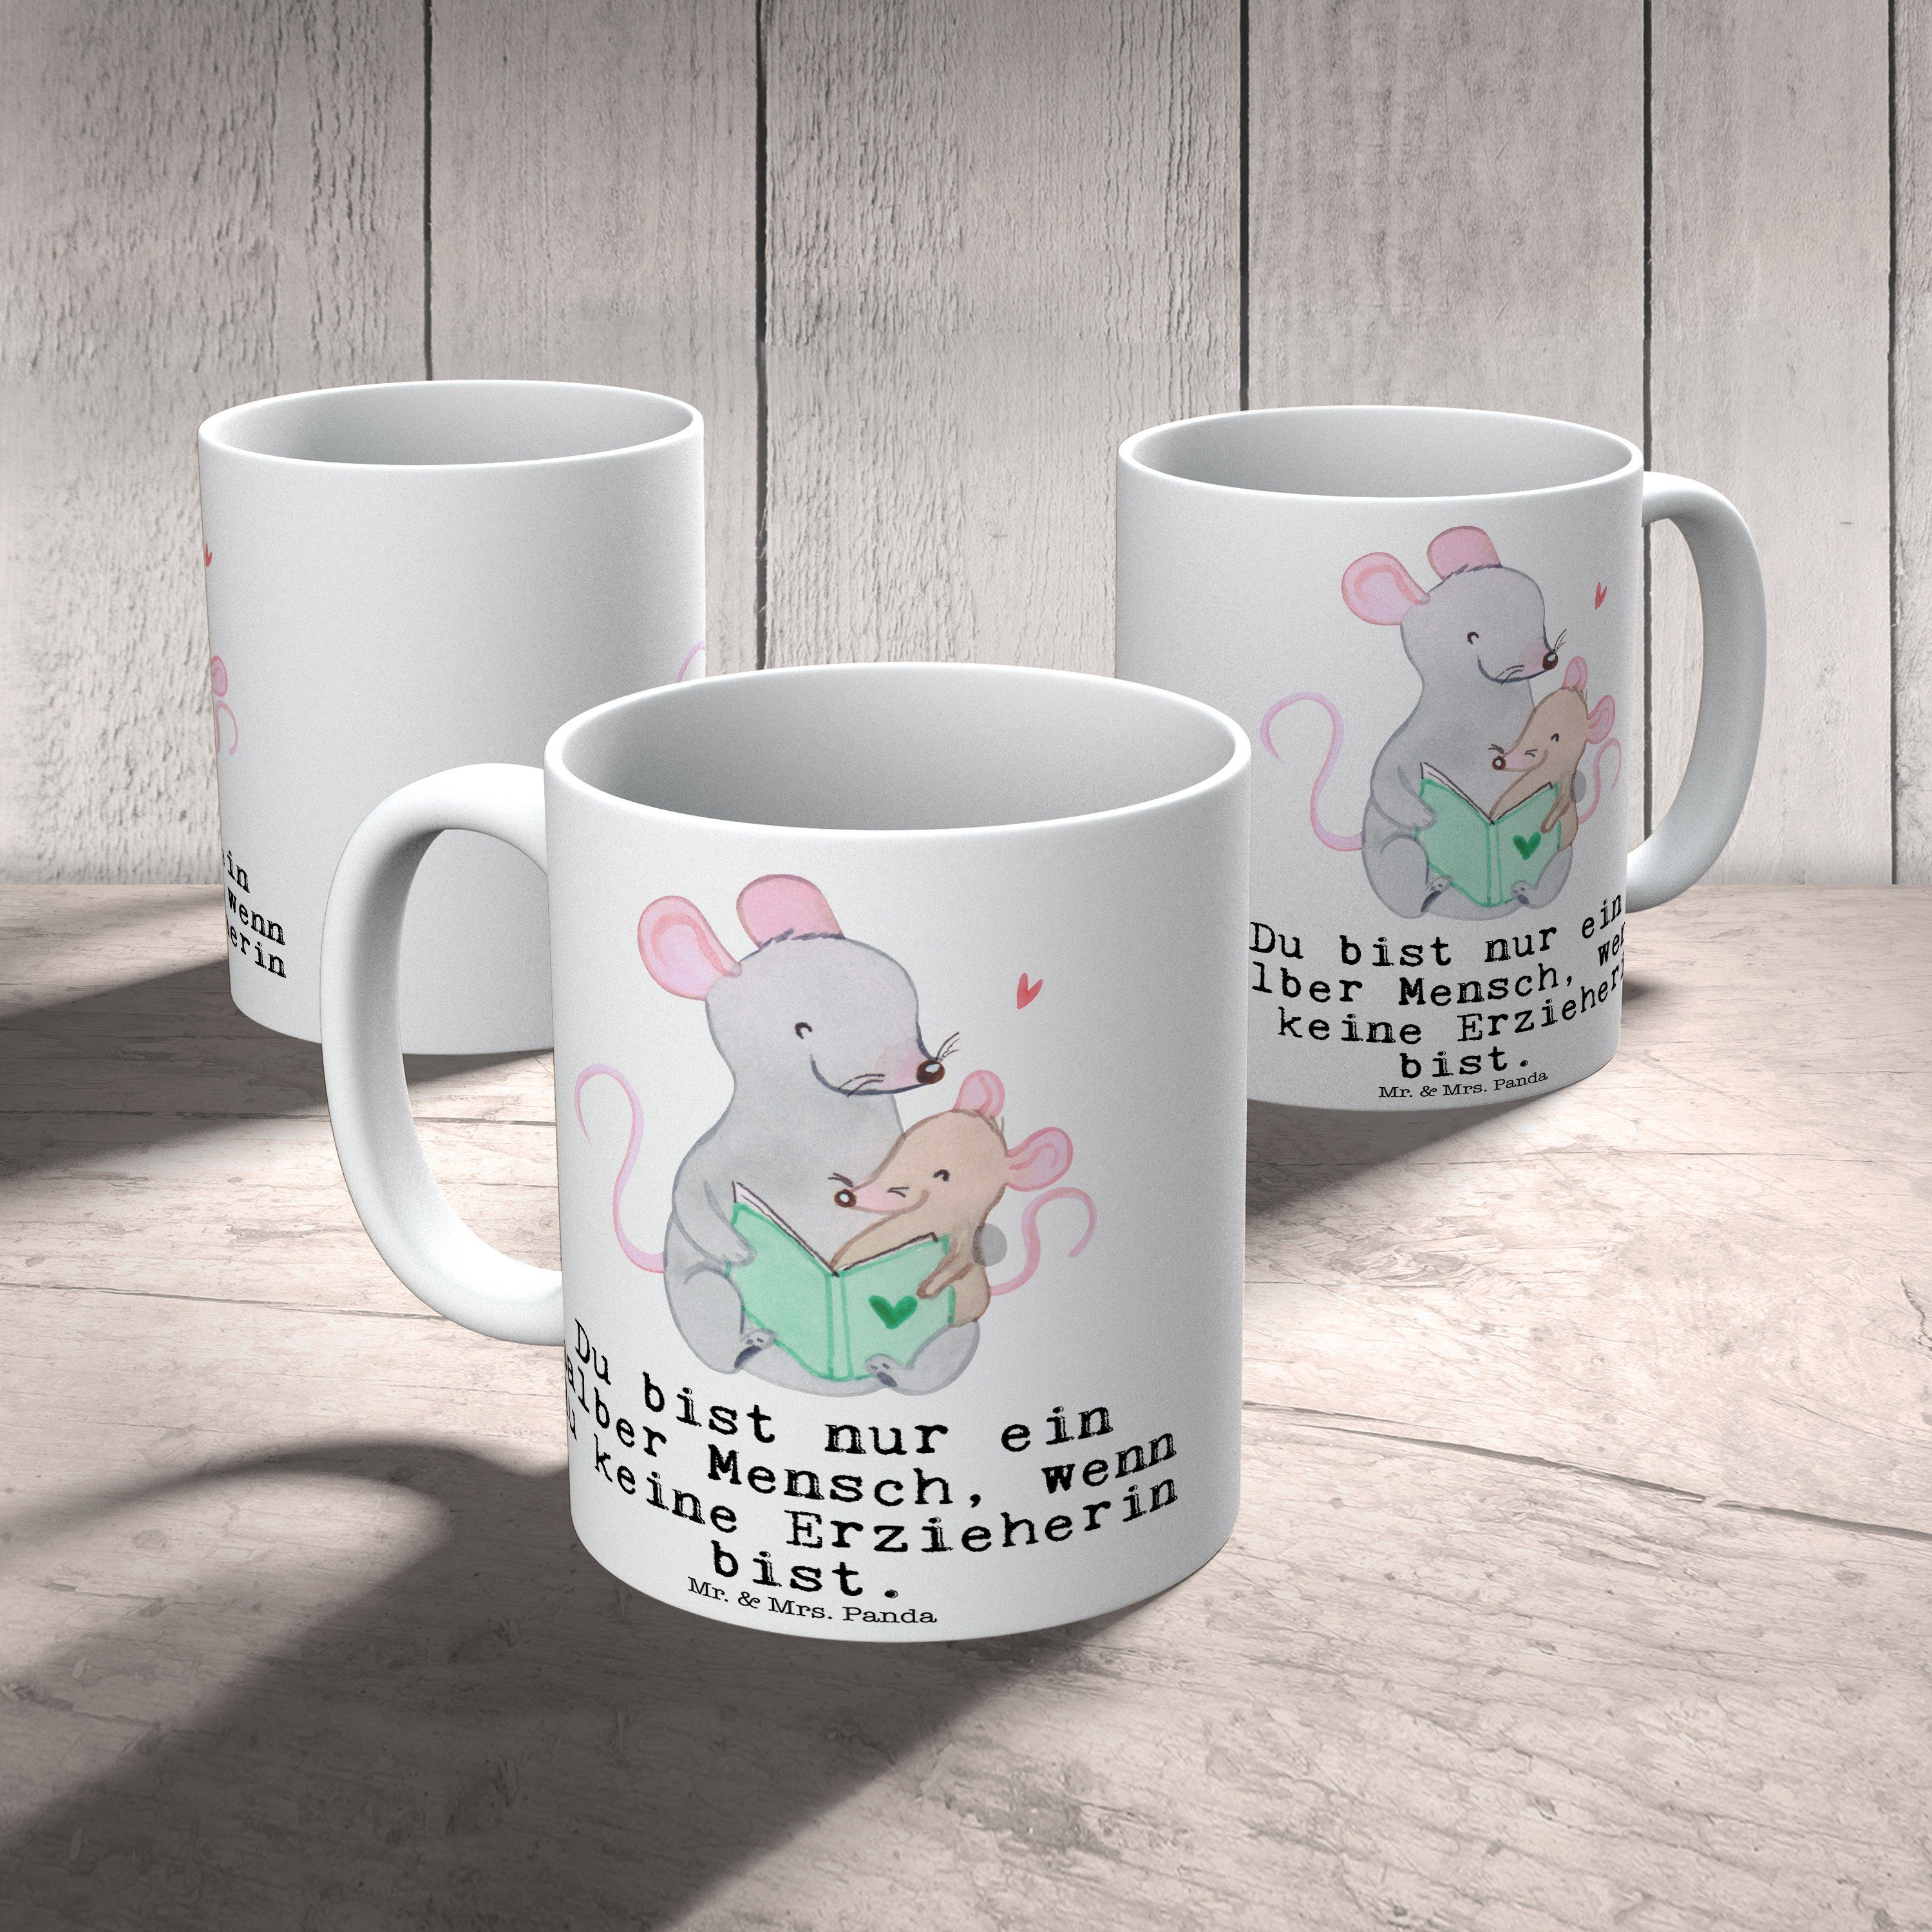 Mr. & Mrs. Panda Tasse - Keramik Tasse Sprüche, Herz mit Geschenk, Erzieherin Weiß Becher, - Tasse